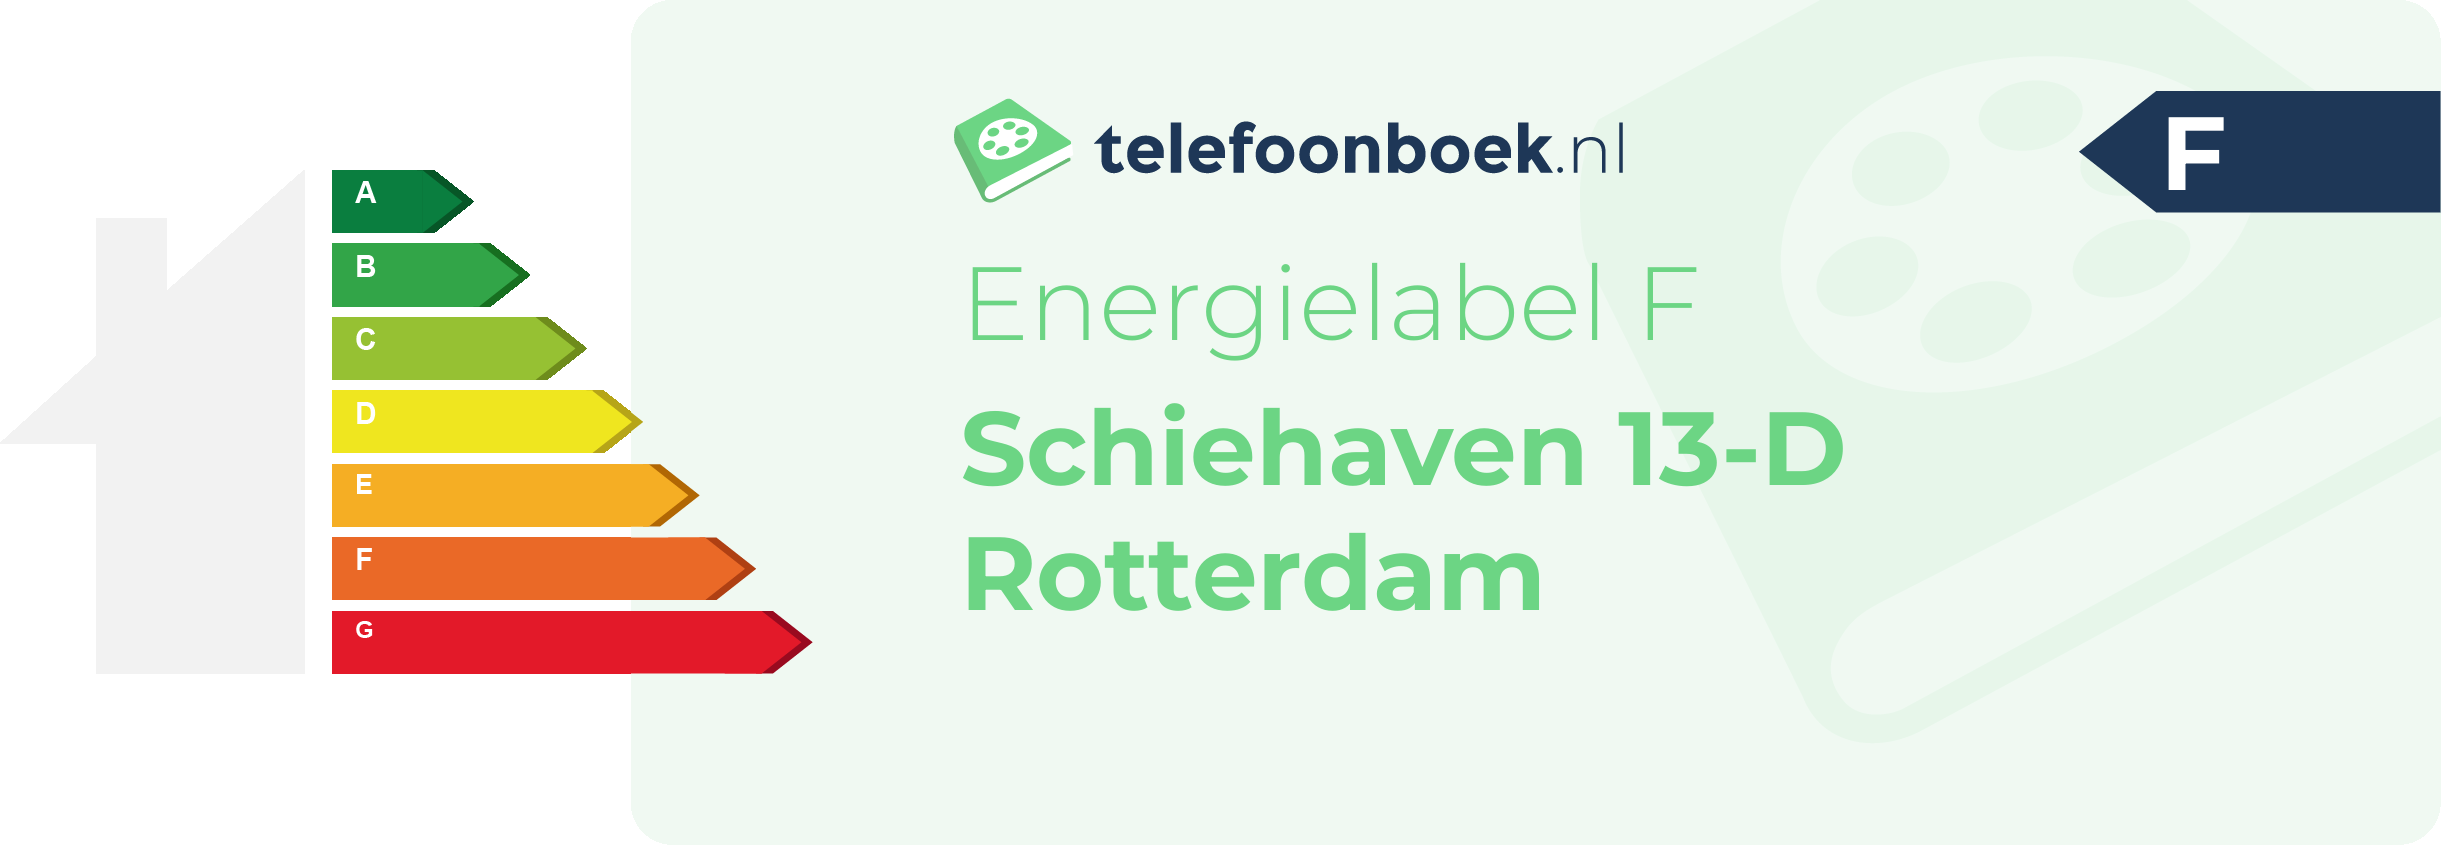 Energielabel Schiehaven 13-D Rotterdam